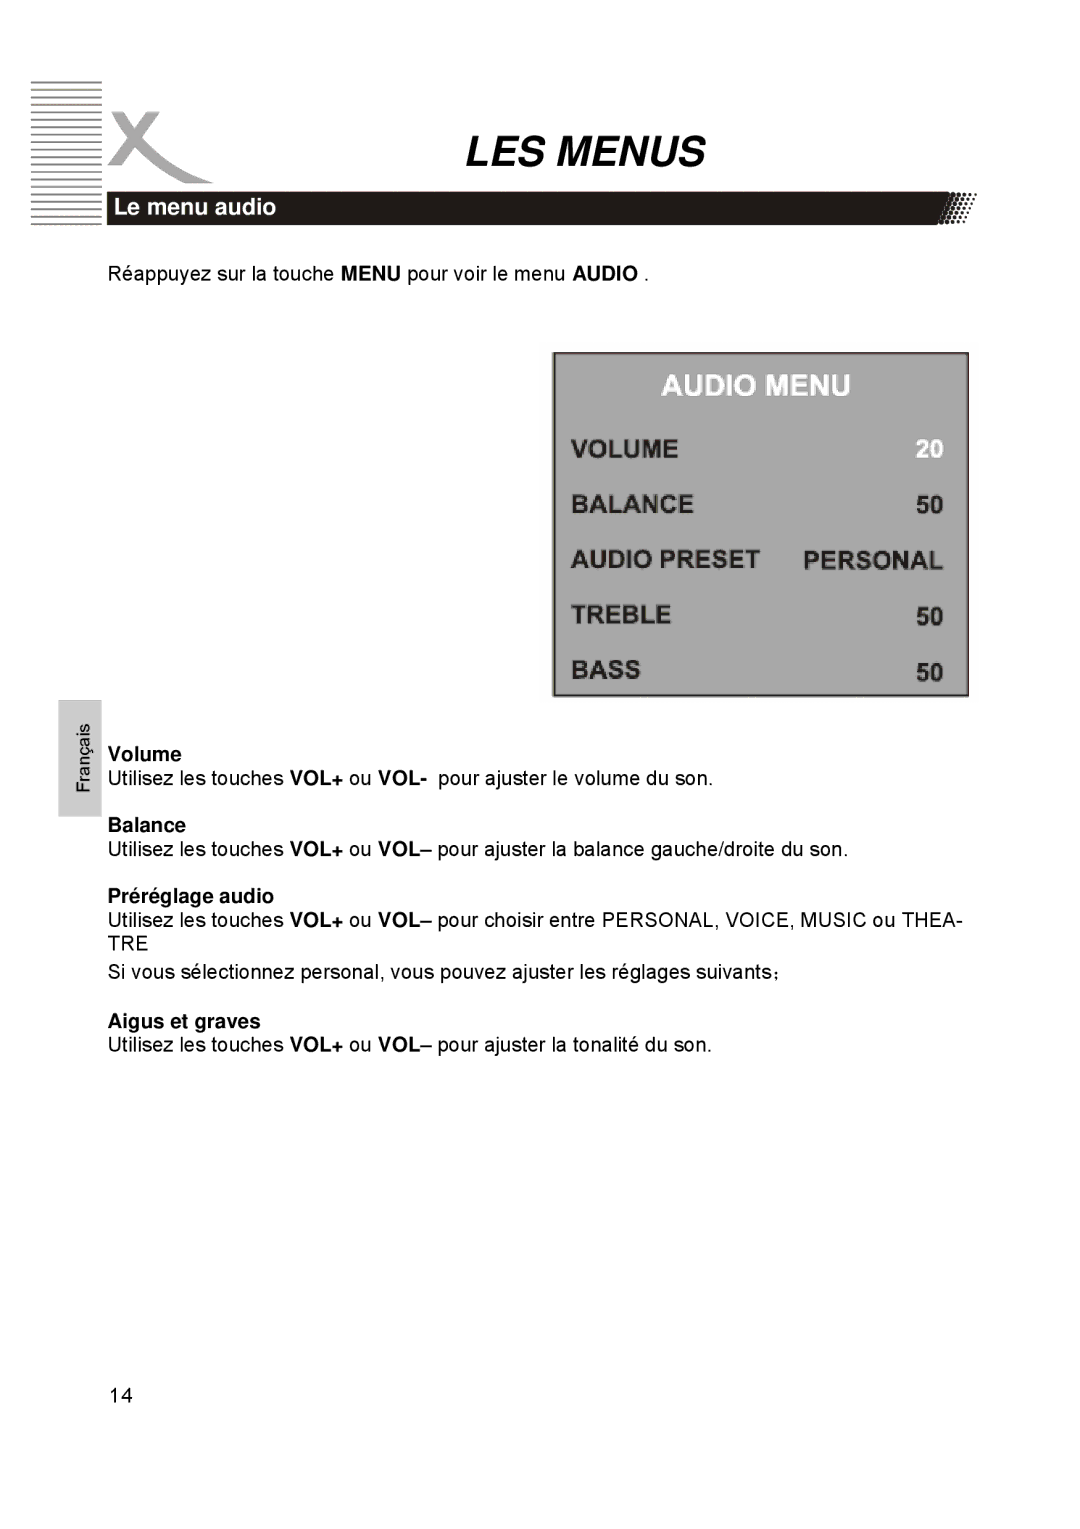 Xoro HTC1900D manual Le menu audio, Préréglage audio, Aigus et graves 